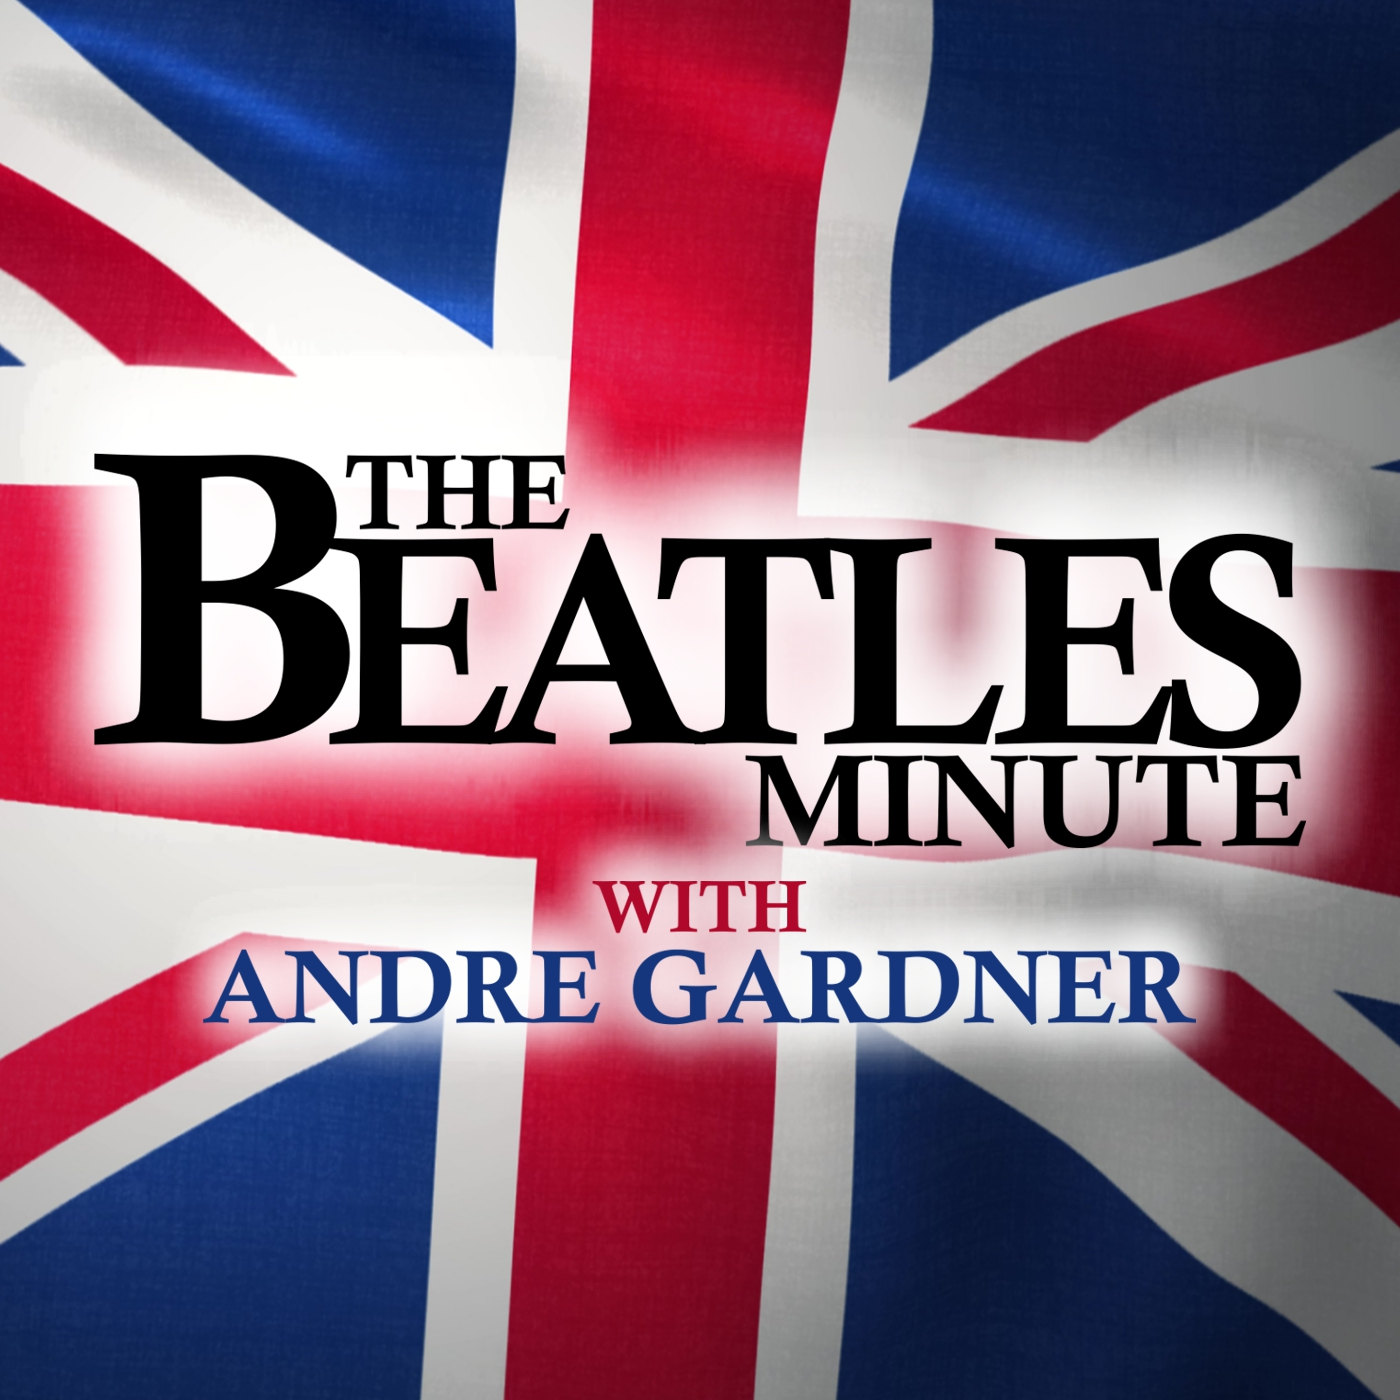 Beatles Minute - week of November 15, 2021